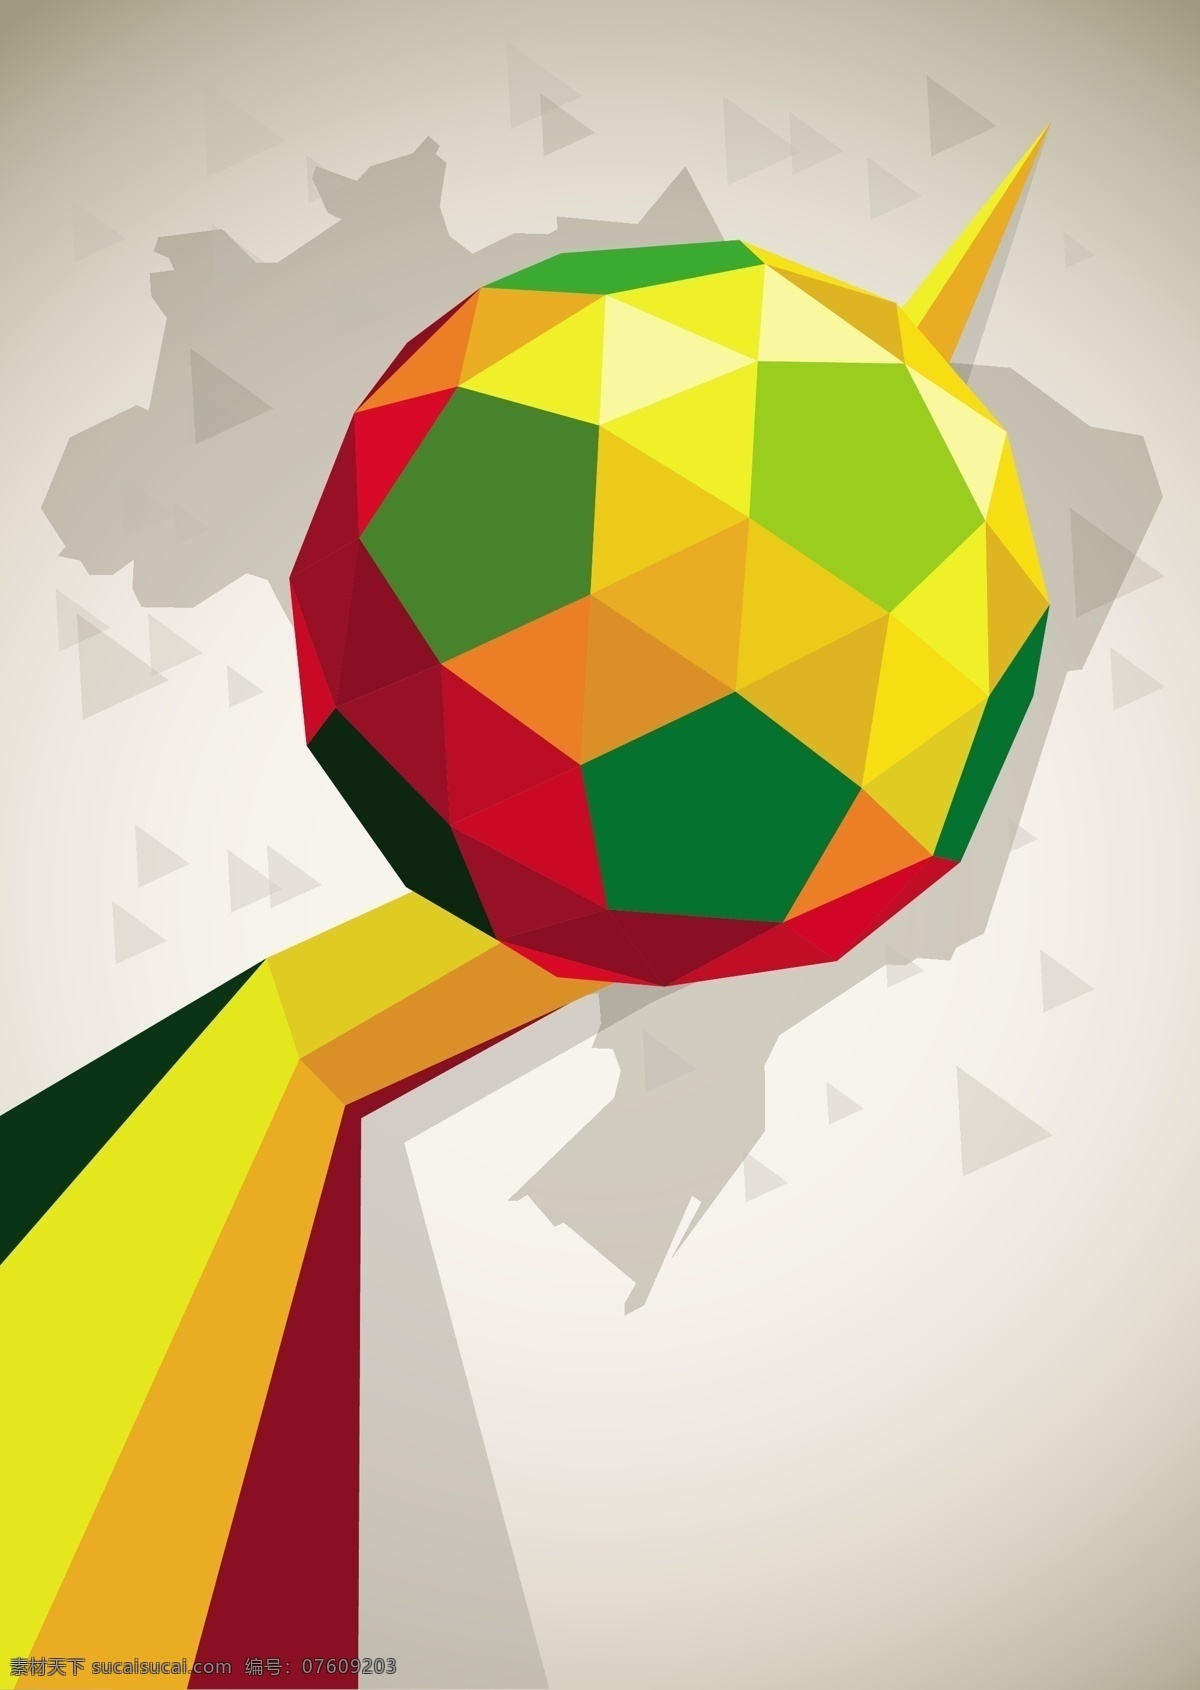 欧洲杯 世界杯 体育 体育运动 文化艺术 足球 足球比赛 足球海报 足球运动 足球矢量素材 足球模板下载 足球设计 体育设计 体育比赛 矢量 企业文化海报